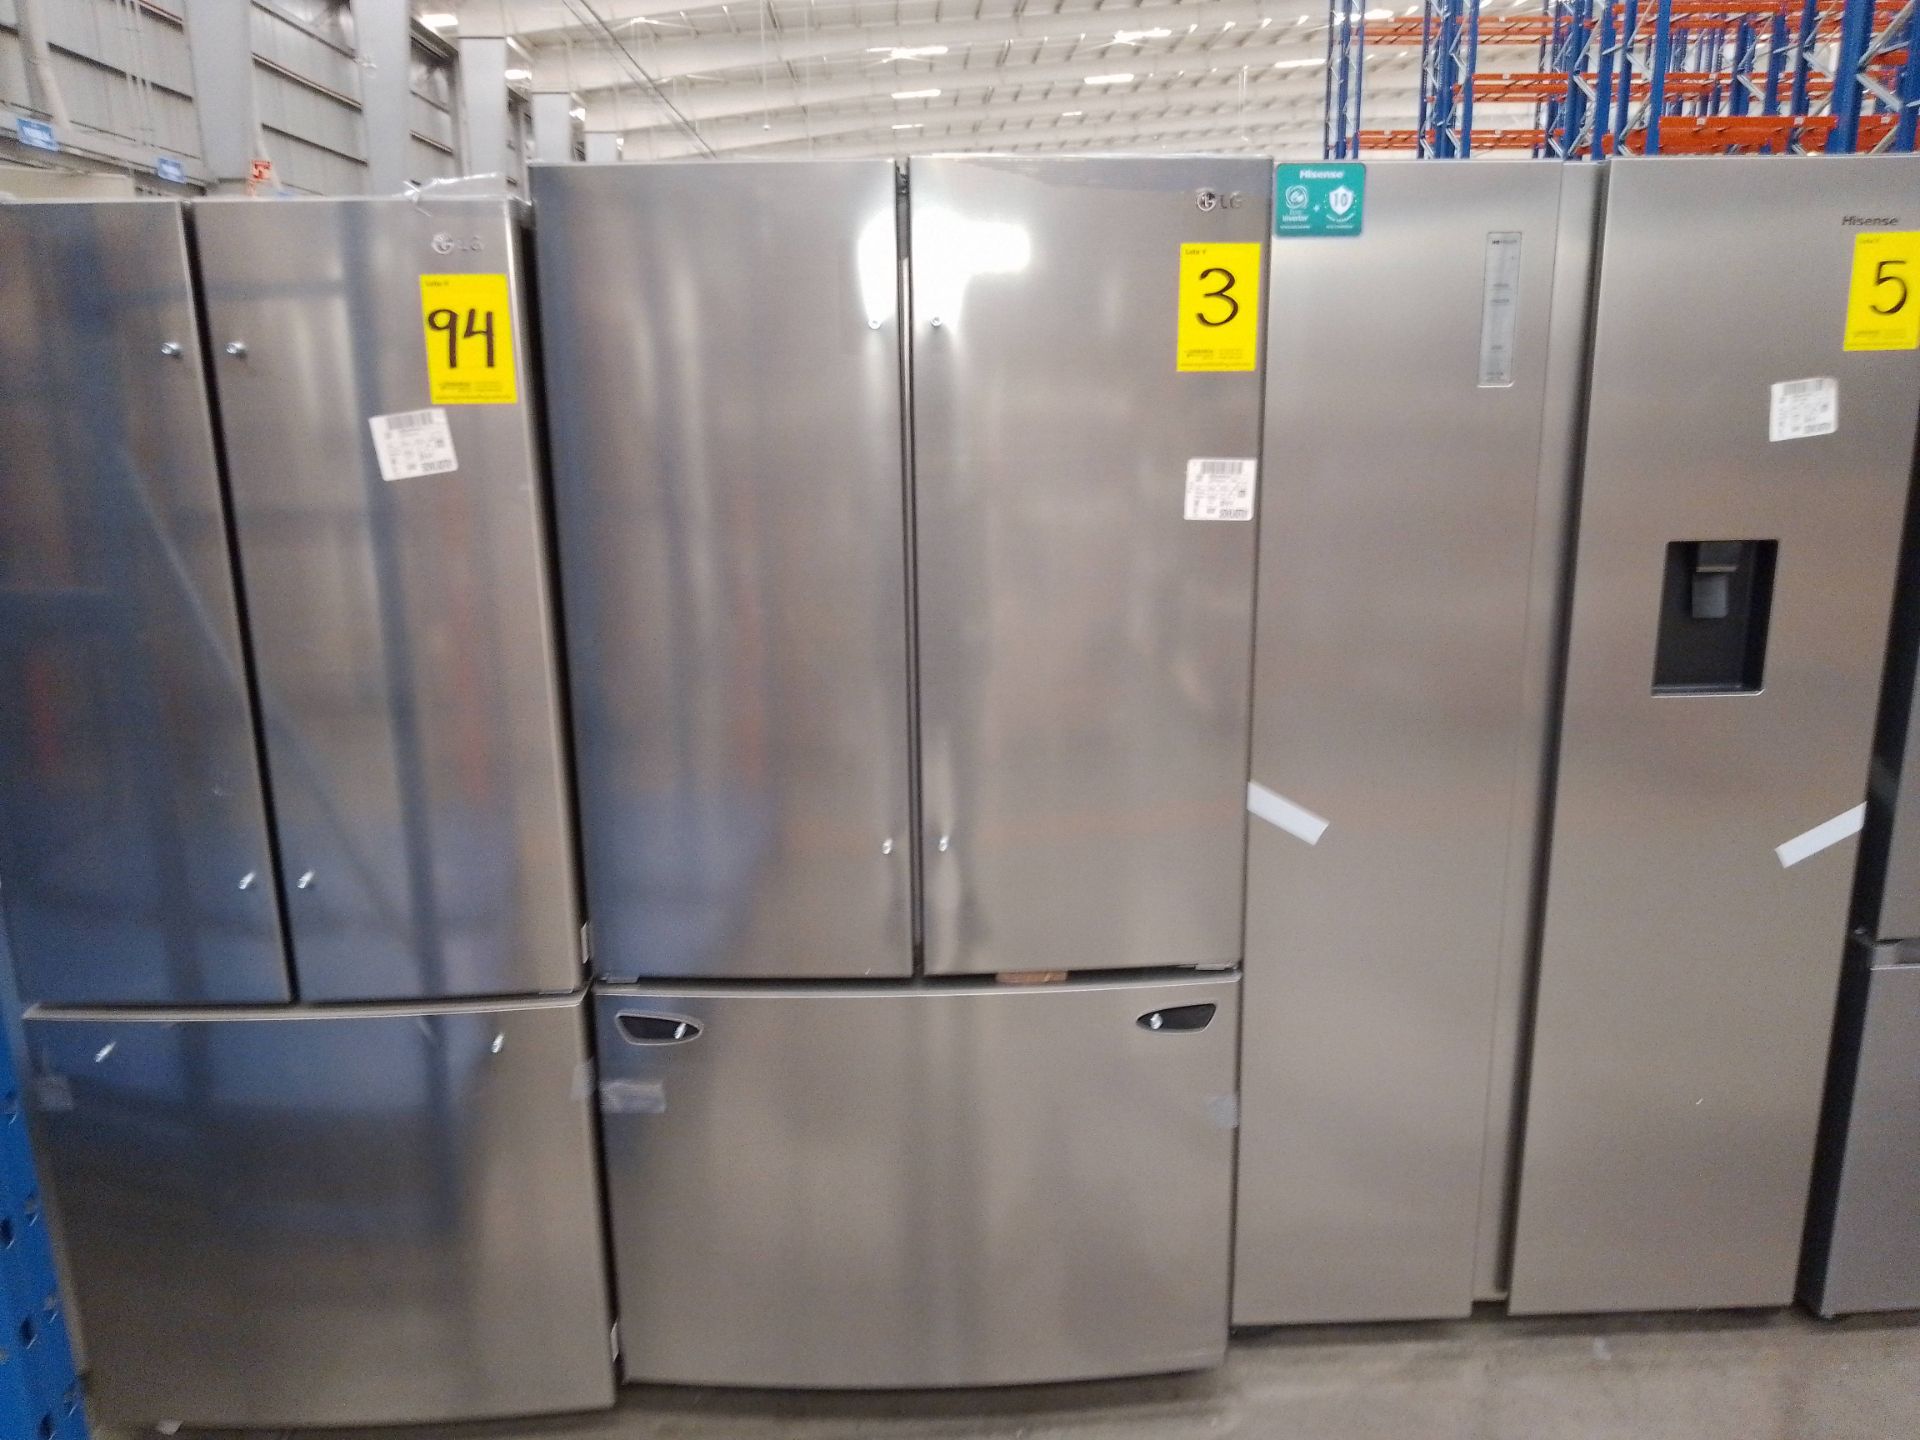 (Nuevo) Lote de 1 Refrigerador sin Dispensador de Agua Marca LG, Modelo GM29BIP, Serie P0E755, Colo